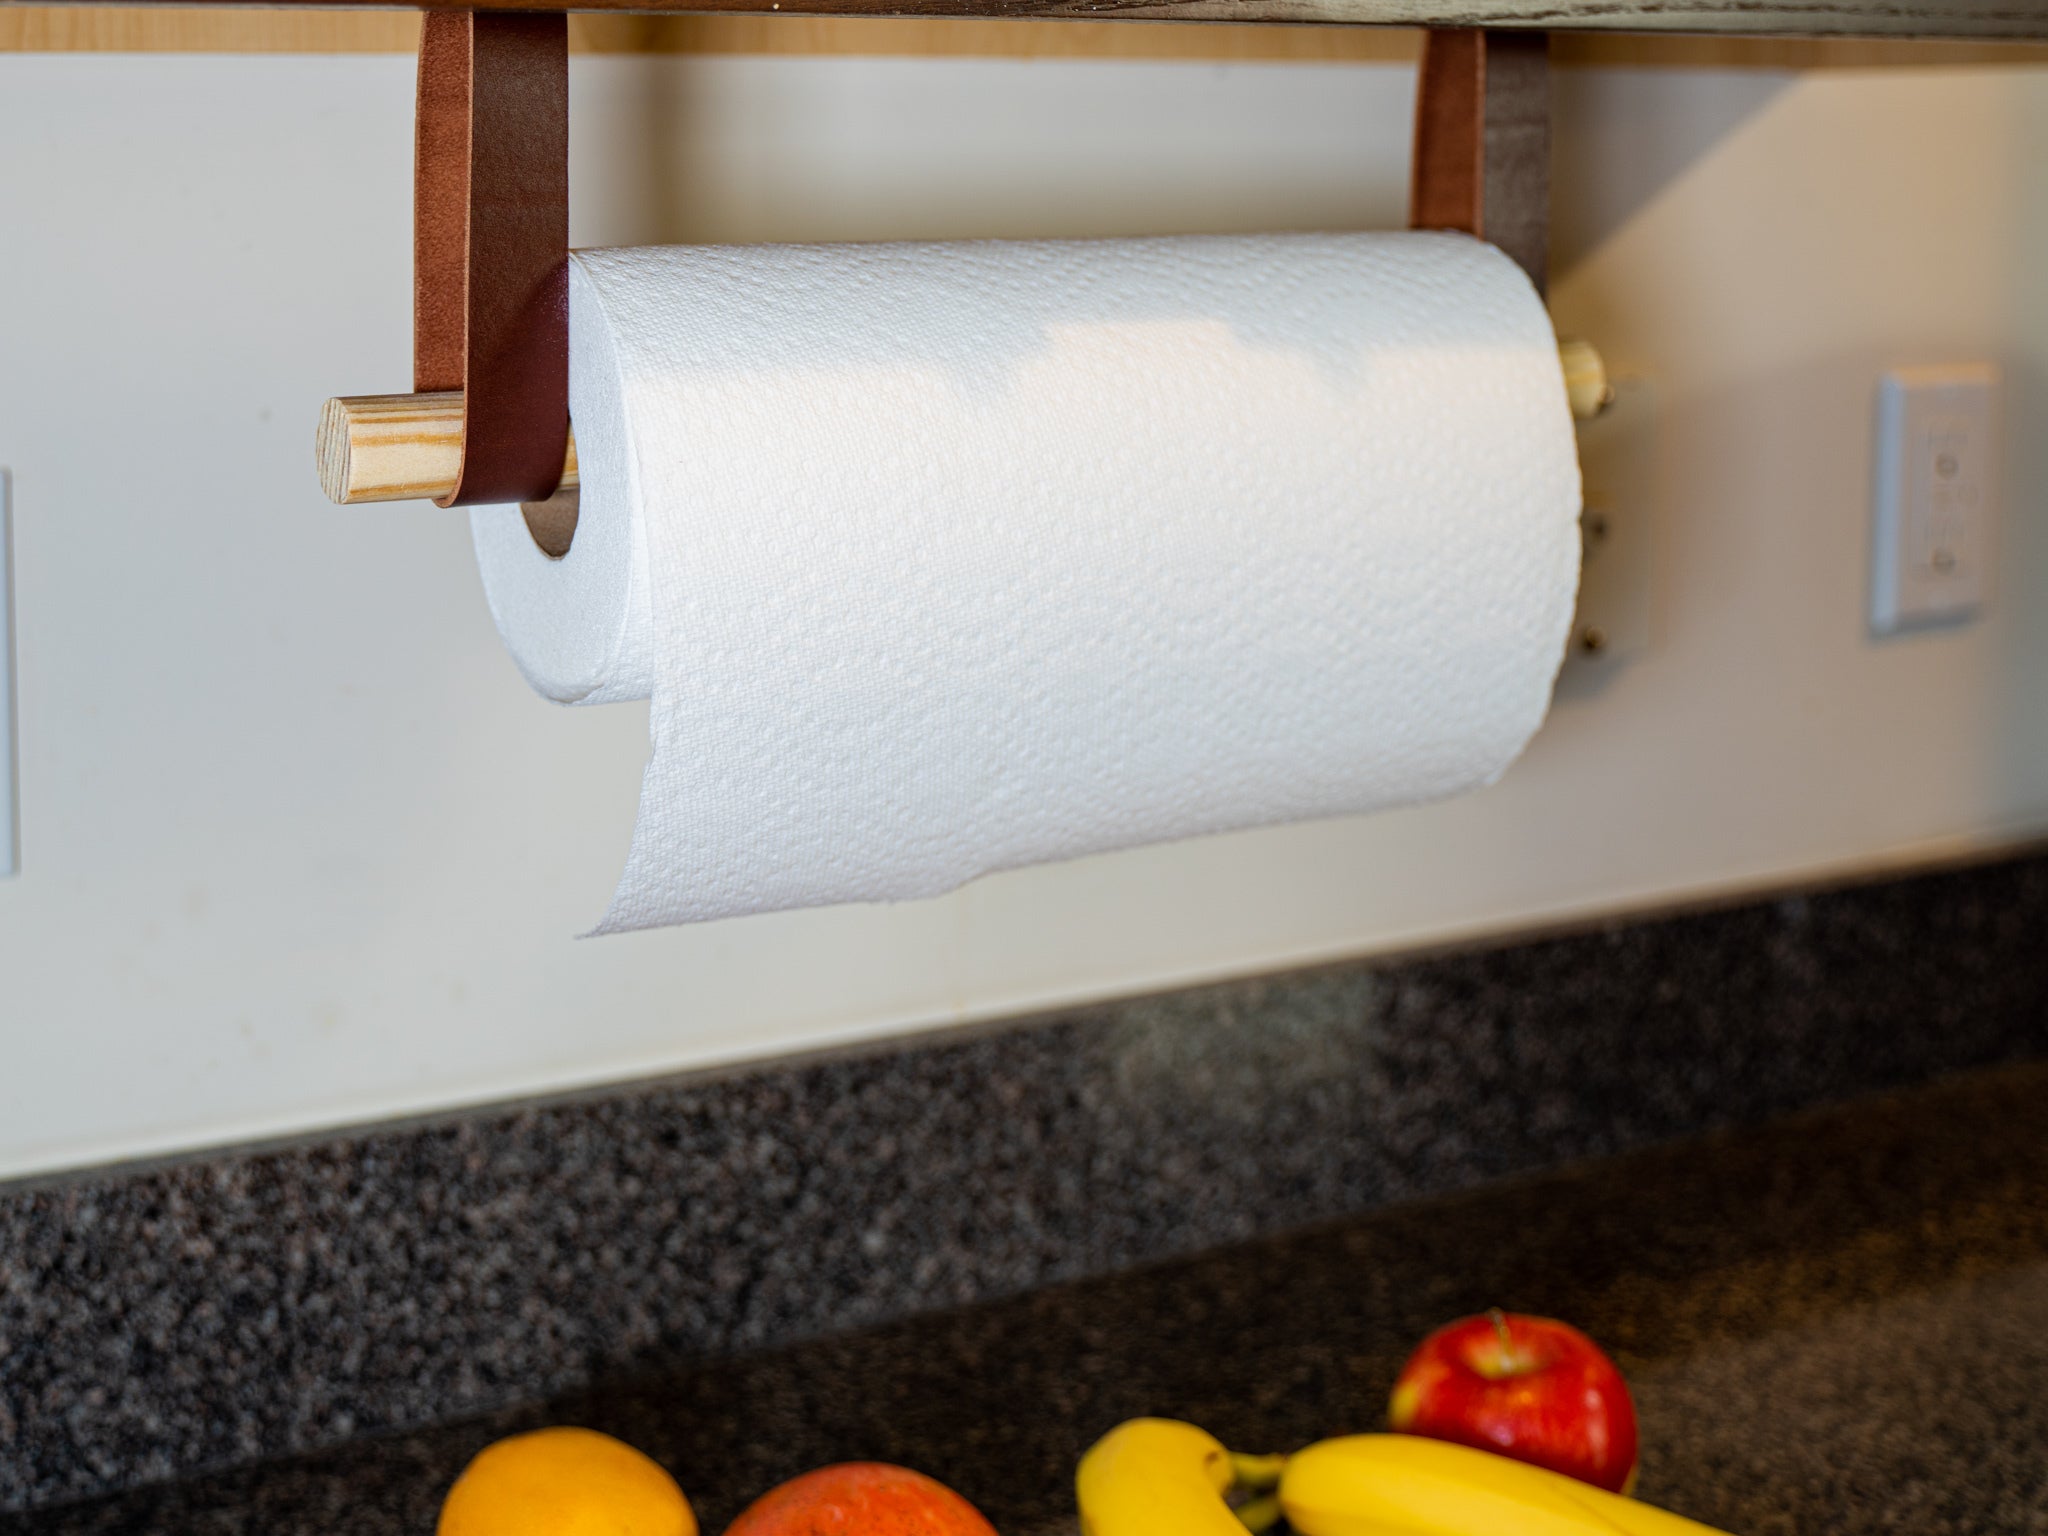 Paper Towel Holder, Paper Towel Holder Under Cabinet, Under